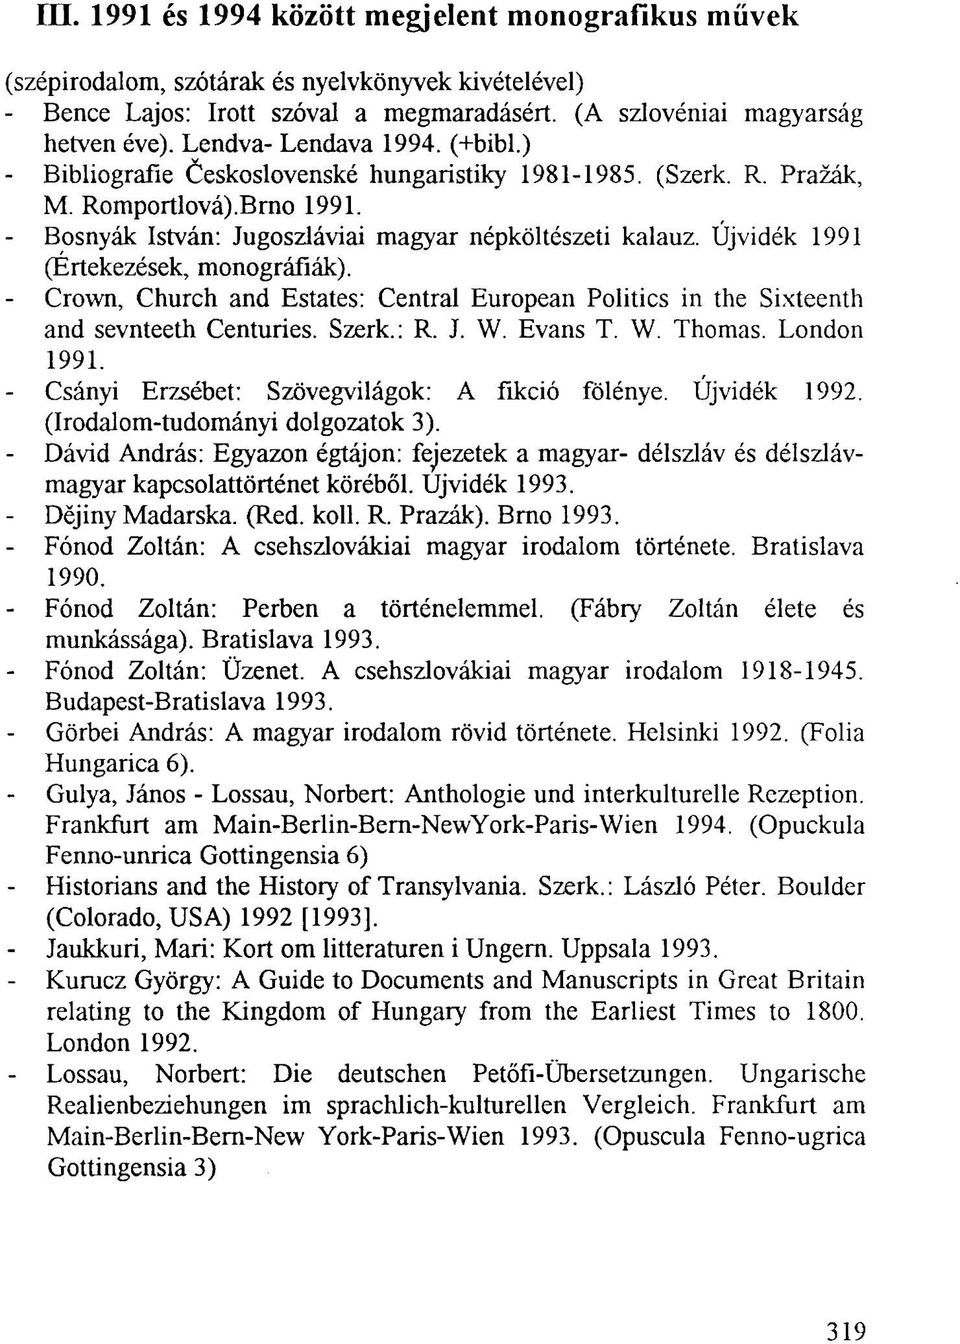 Újvidék 1991 (Értekezések, monográfiák). - Crown, Church and Estates: Central European Politics in the Sixteenth and sevnteeth Centuries. Szerk.: R. J. W. Evans T. W. Thomas. London 1991.